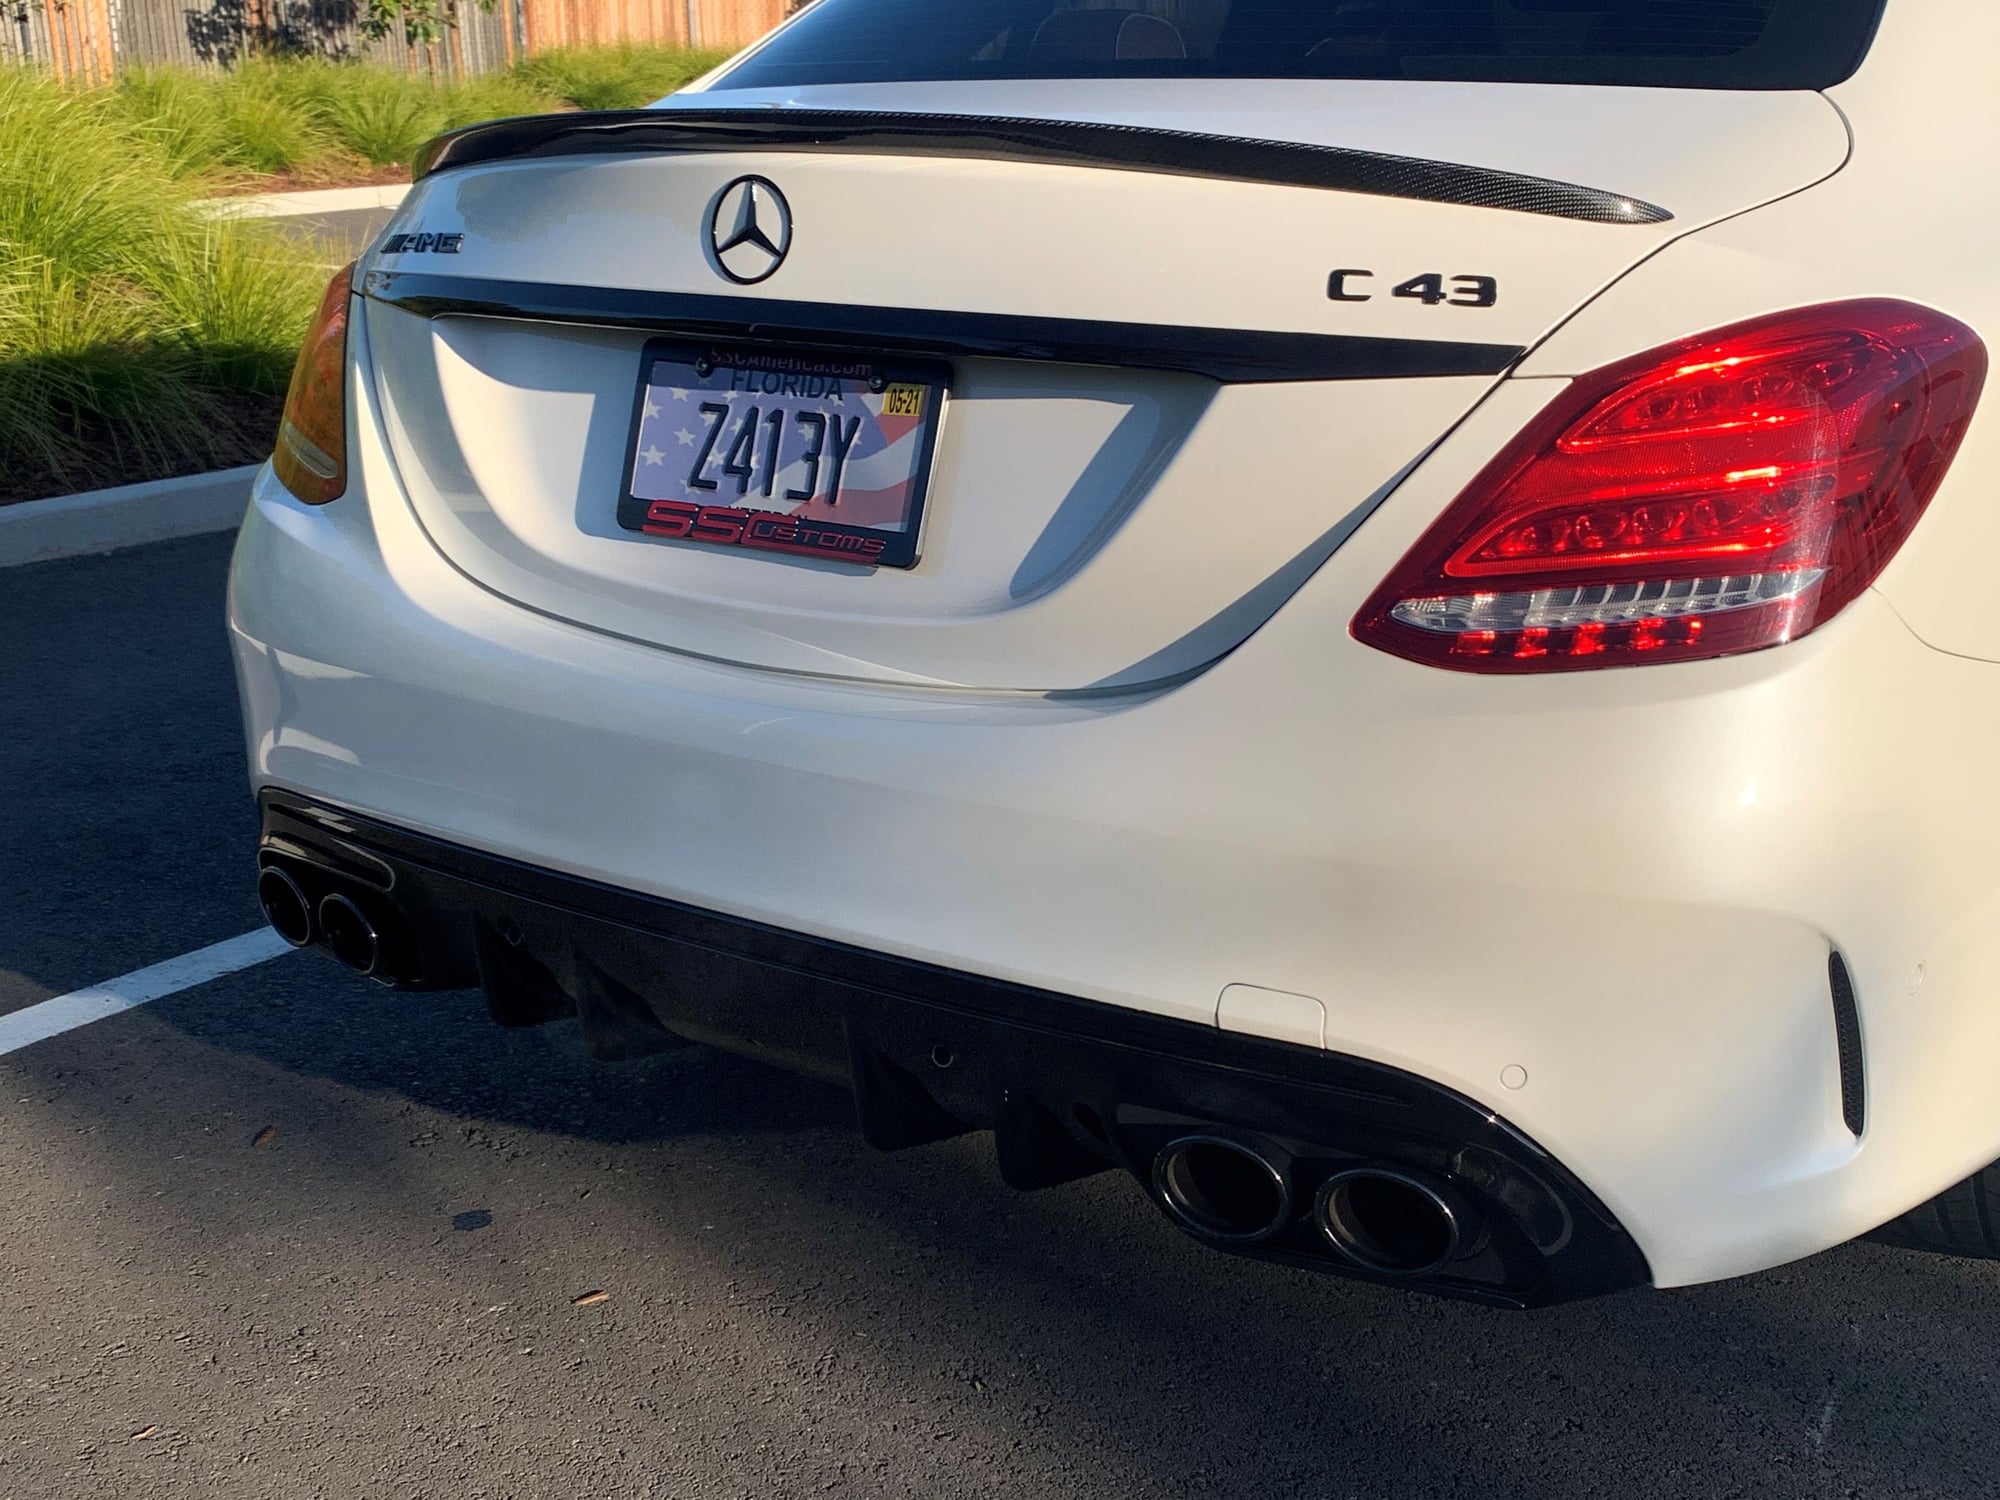 2018 Mercedes-Benz C43 AMG - 2018 C43 AMG Sedan - Used - VIN 55SWF6EB3JU257127 - 13,500 Miles - 6 cyl - AWD - Sedan - Other - Alameda, CA 94502, United States